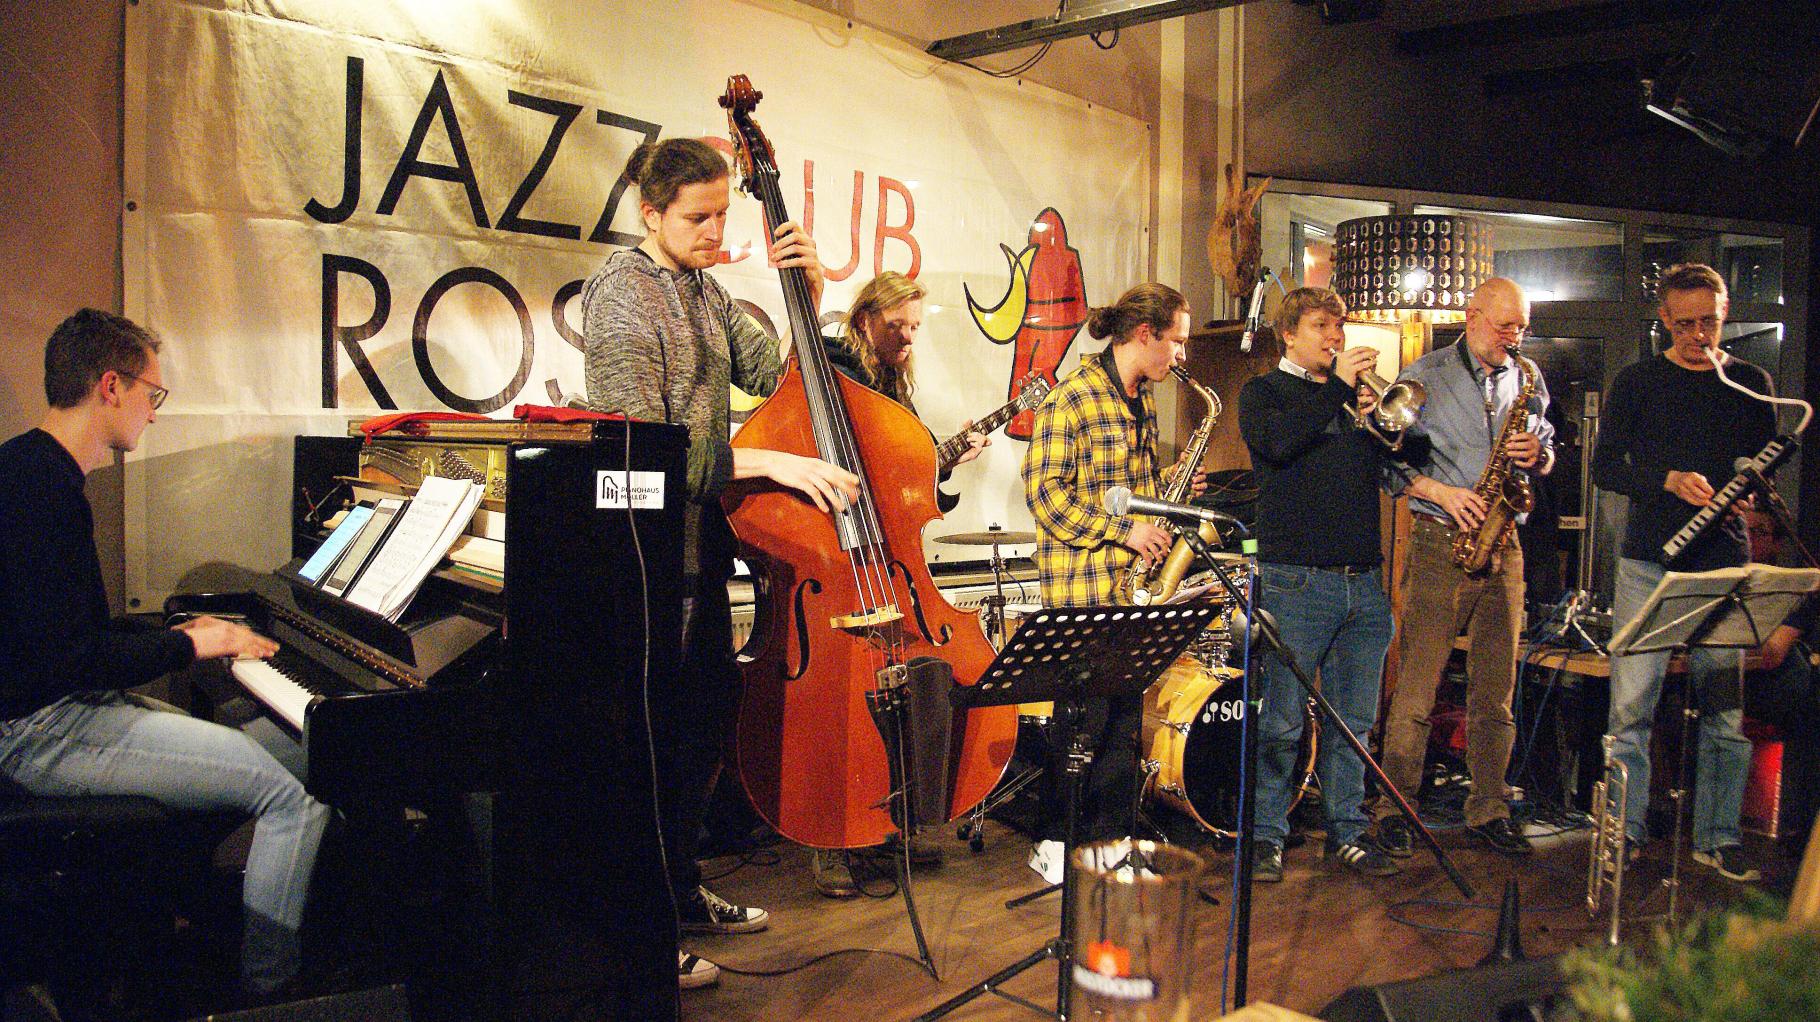 Jazzszene trifft sich wieder am Rostocker Stadthafen